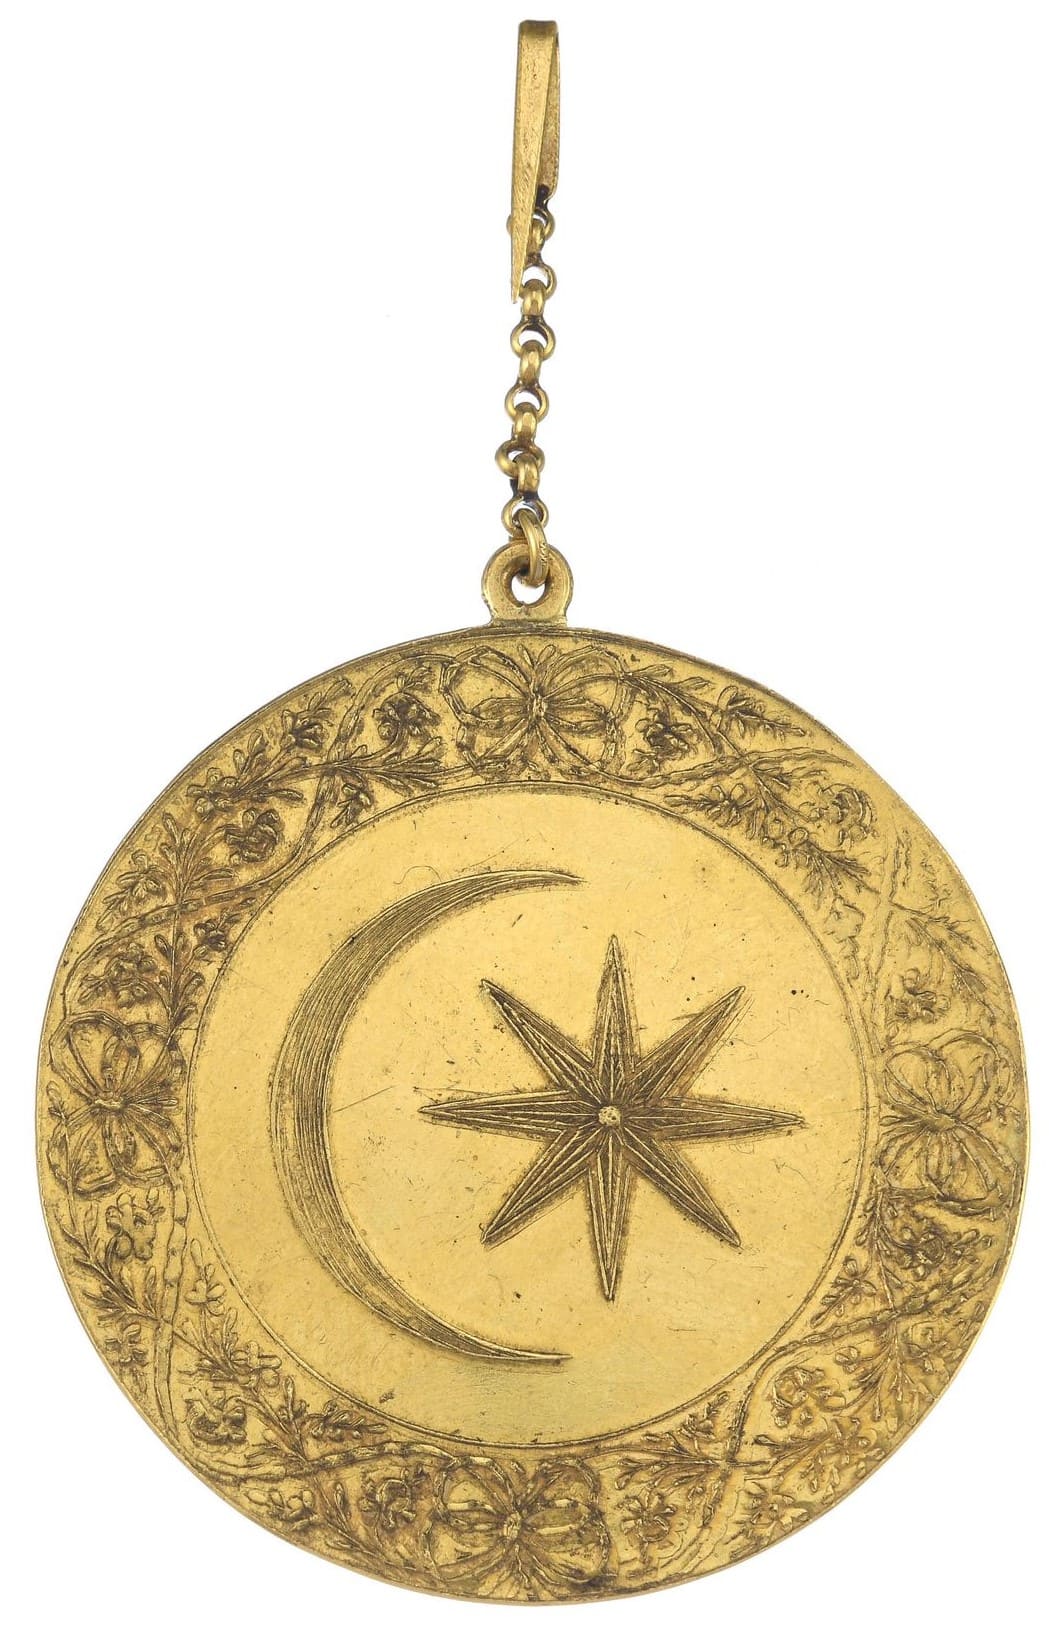 Sultan's Medal for Egypt in gold.jpg